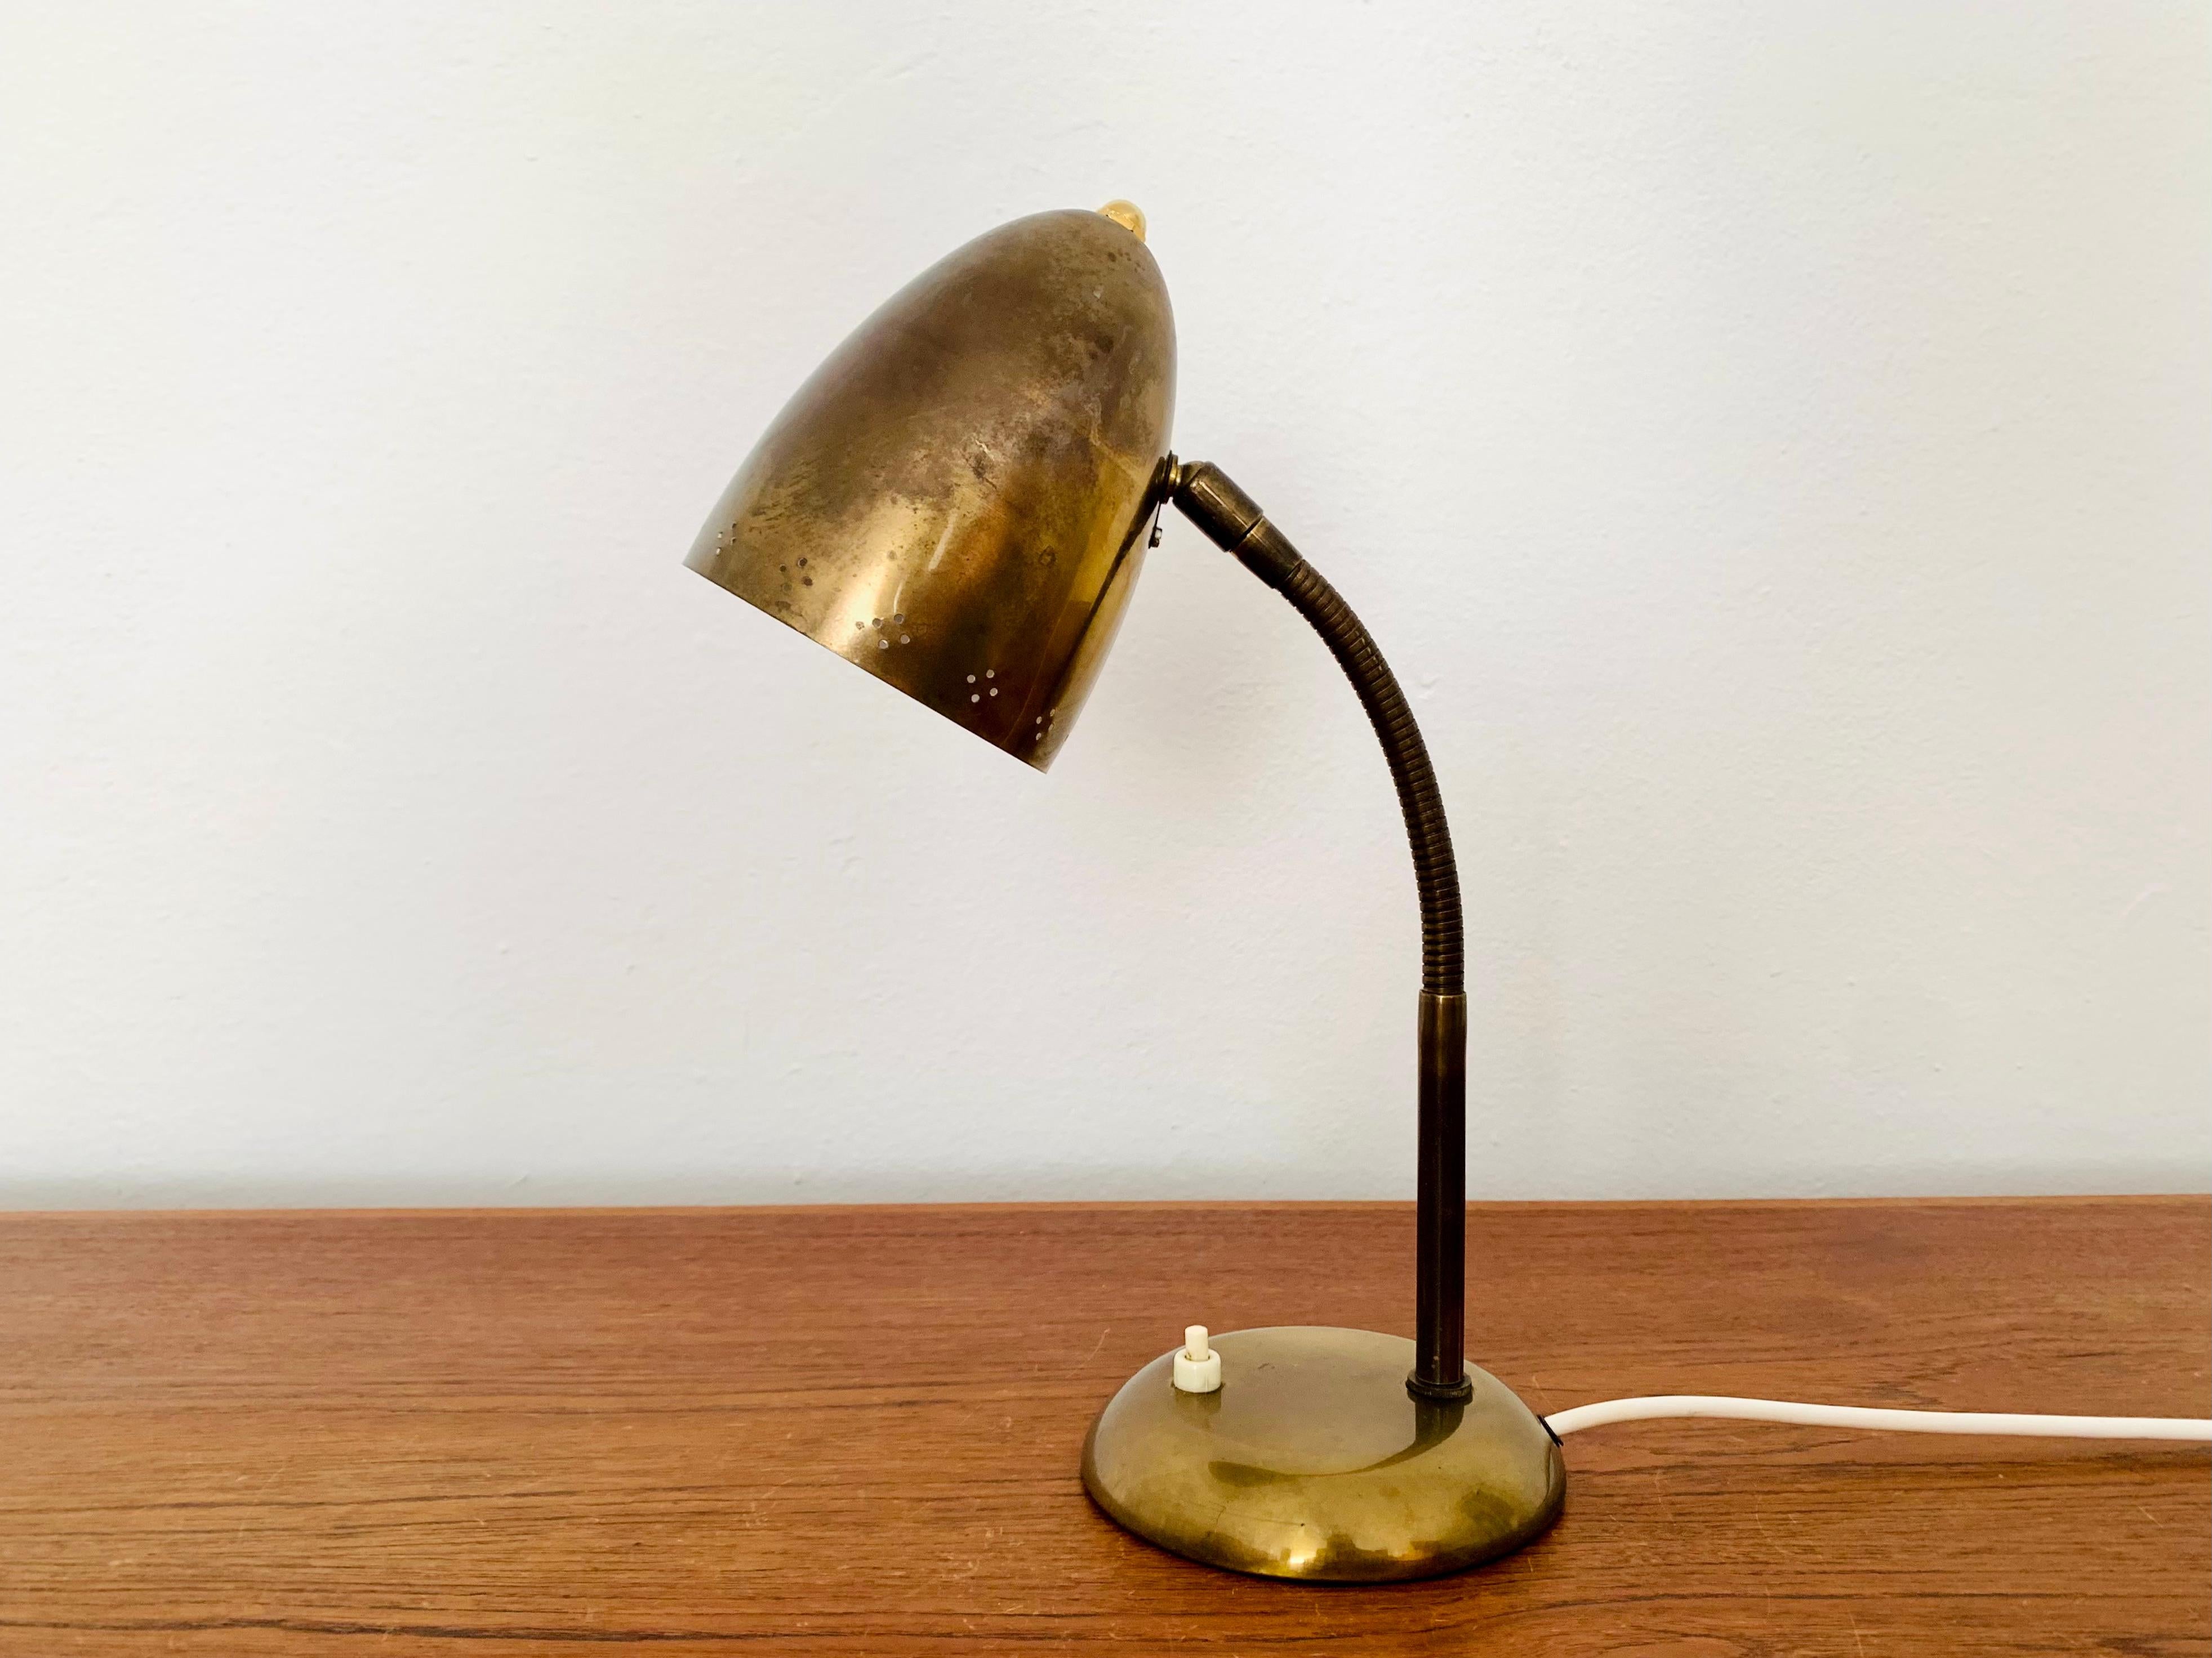 Sehr schöne goldene Tischlampe aus den 1950er Jahren.
Fantastisches Design aus der Mitte des Jahrhunderts.
Die Kombination aus hochwertiger Verarbeitung und liebevollen Details bereichert jedes Haus.
Die dekorativen Löcher im Lampenschirm erzeugen